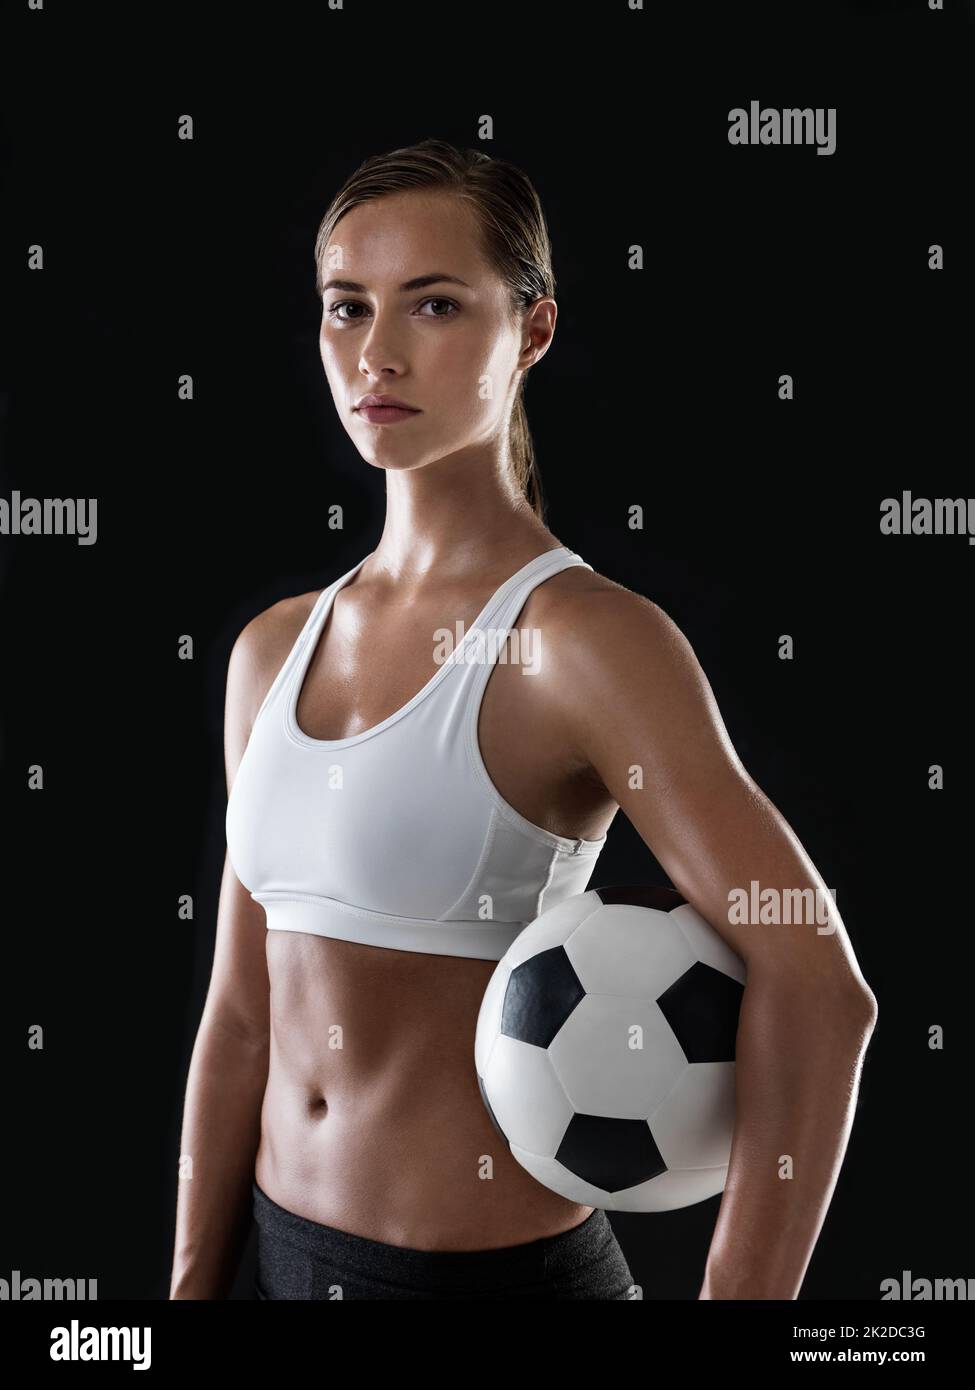 Bereit, den Ball ins Rollen zu bringen. Porträt einer athletischen jungen Frau, die bereit ist, ein Fußballspiel zu spielen. Stockfoto